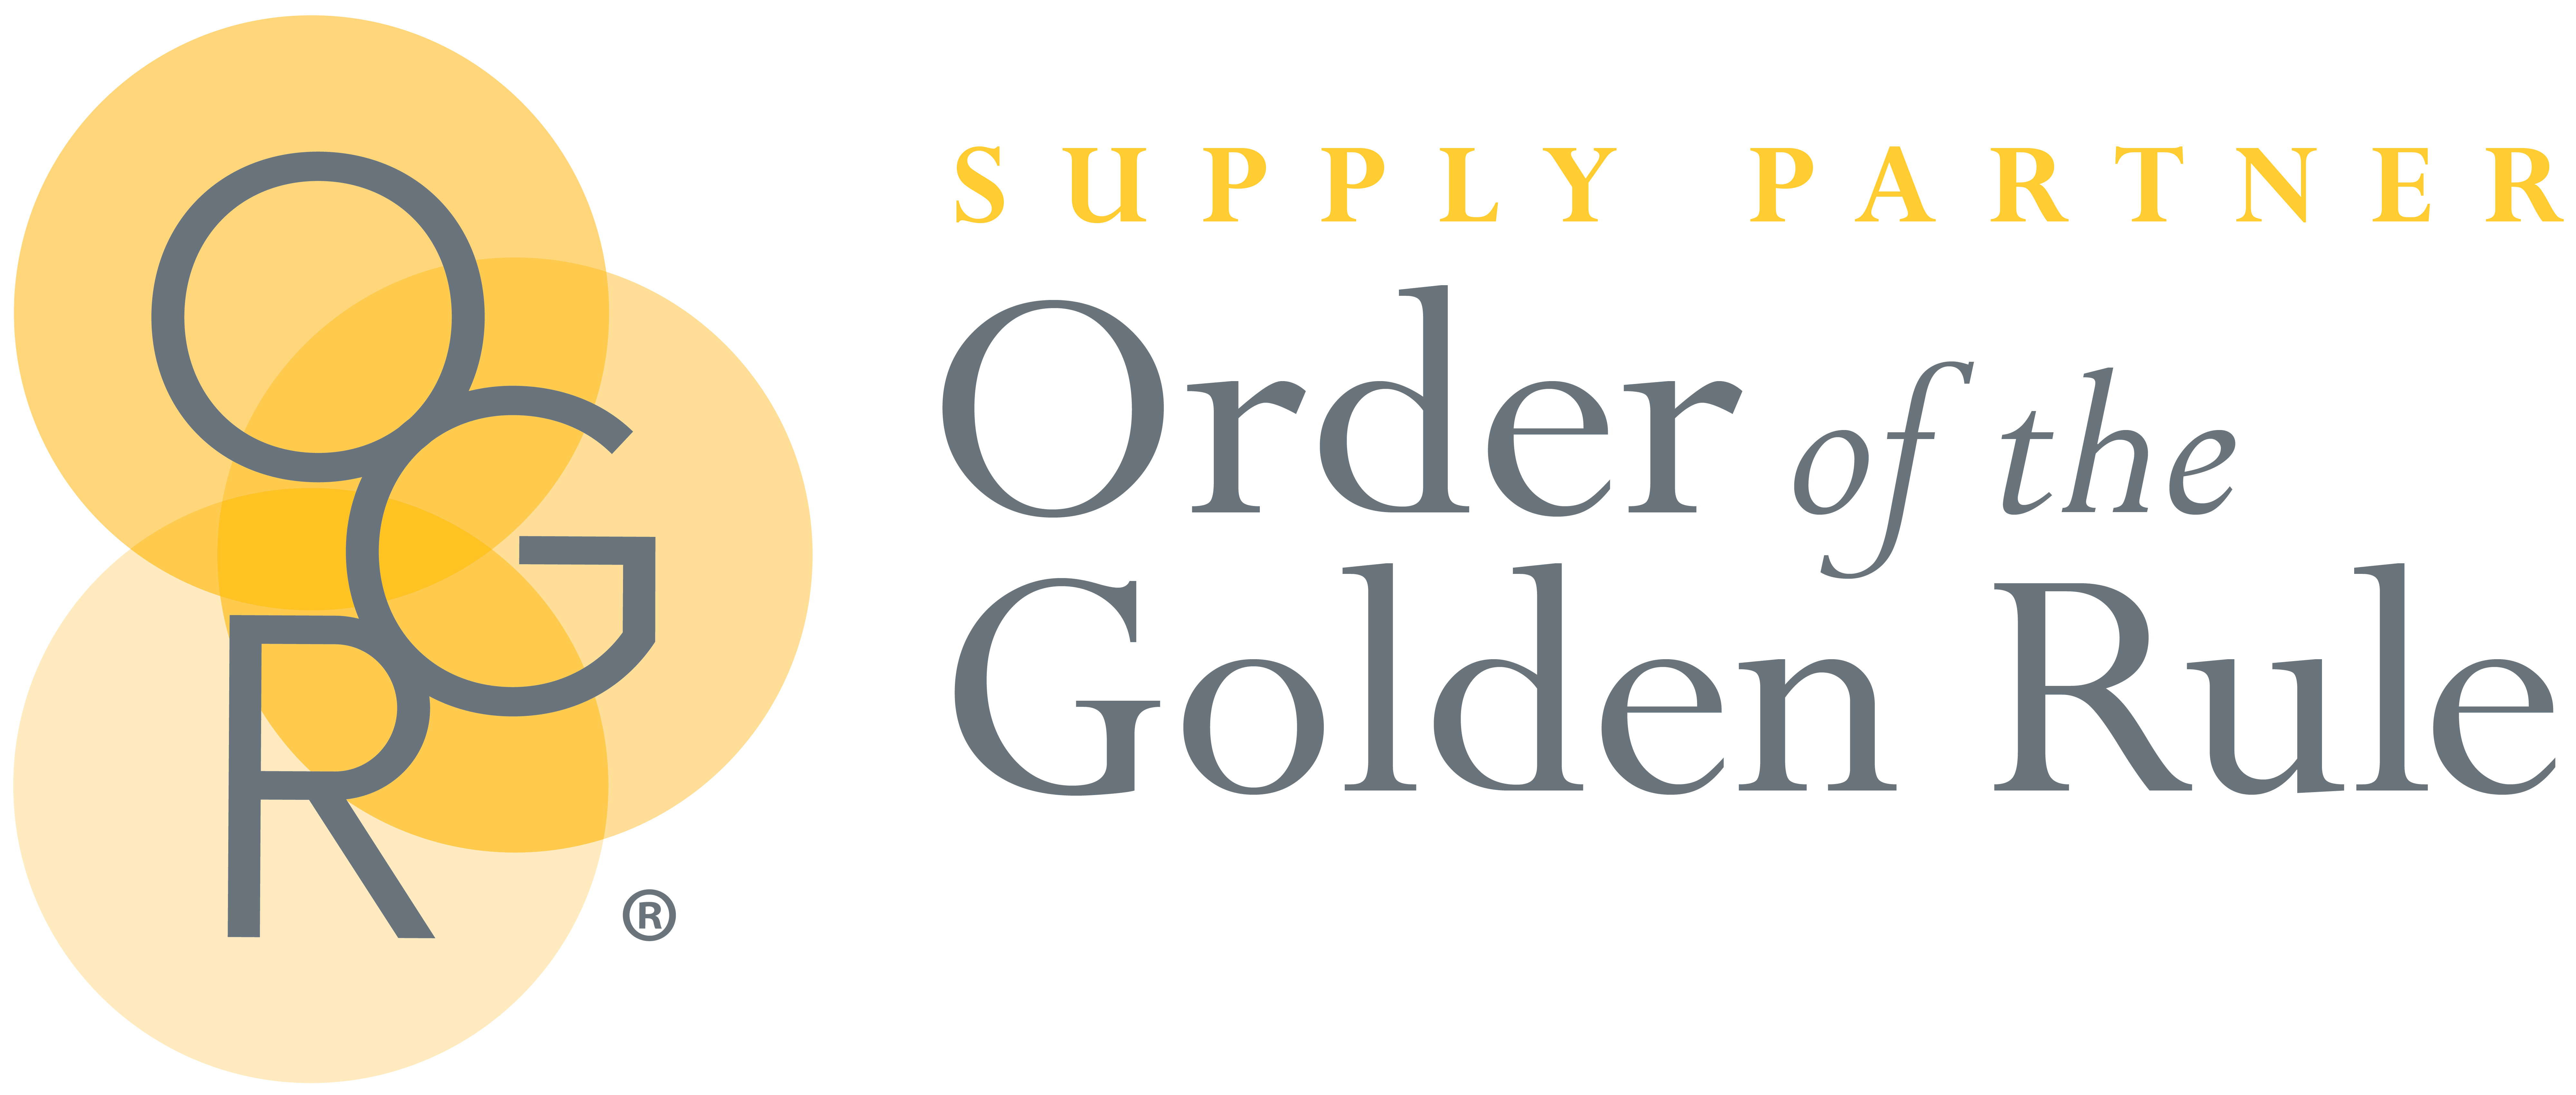 OGR Supply Partner logo 2021